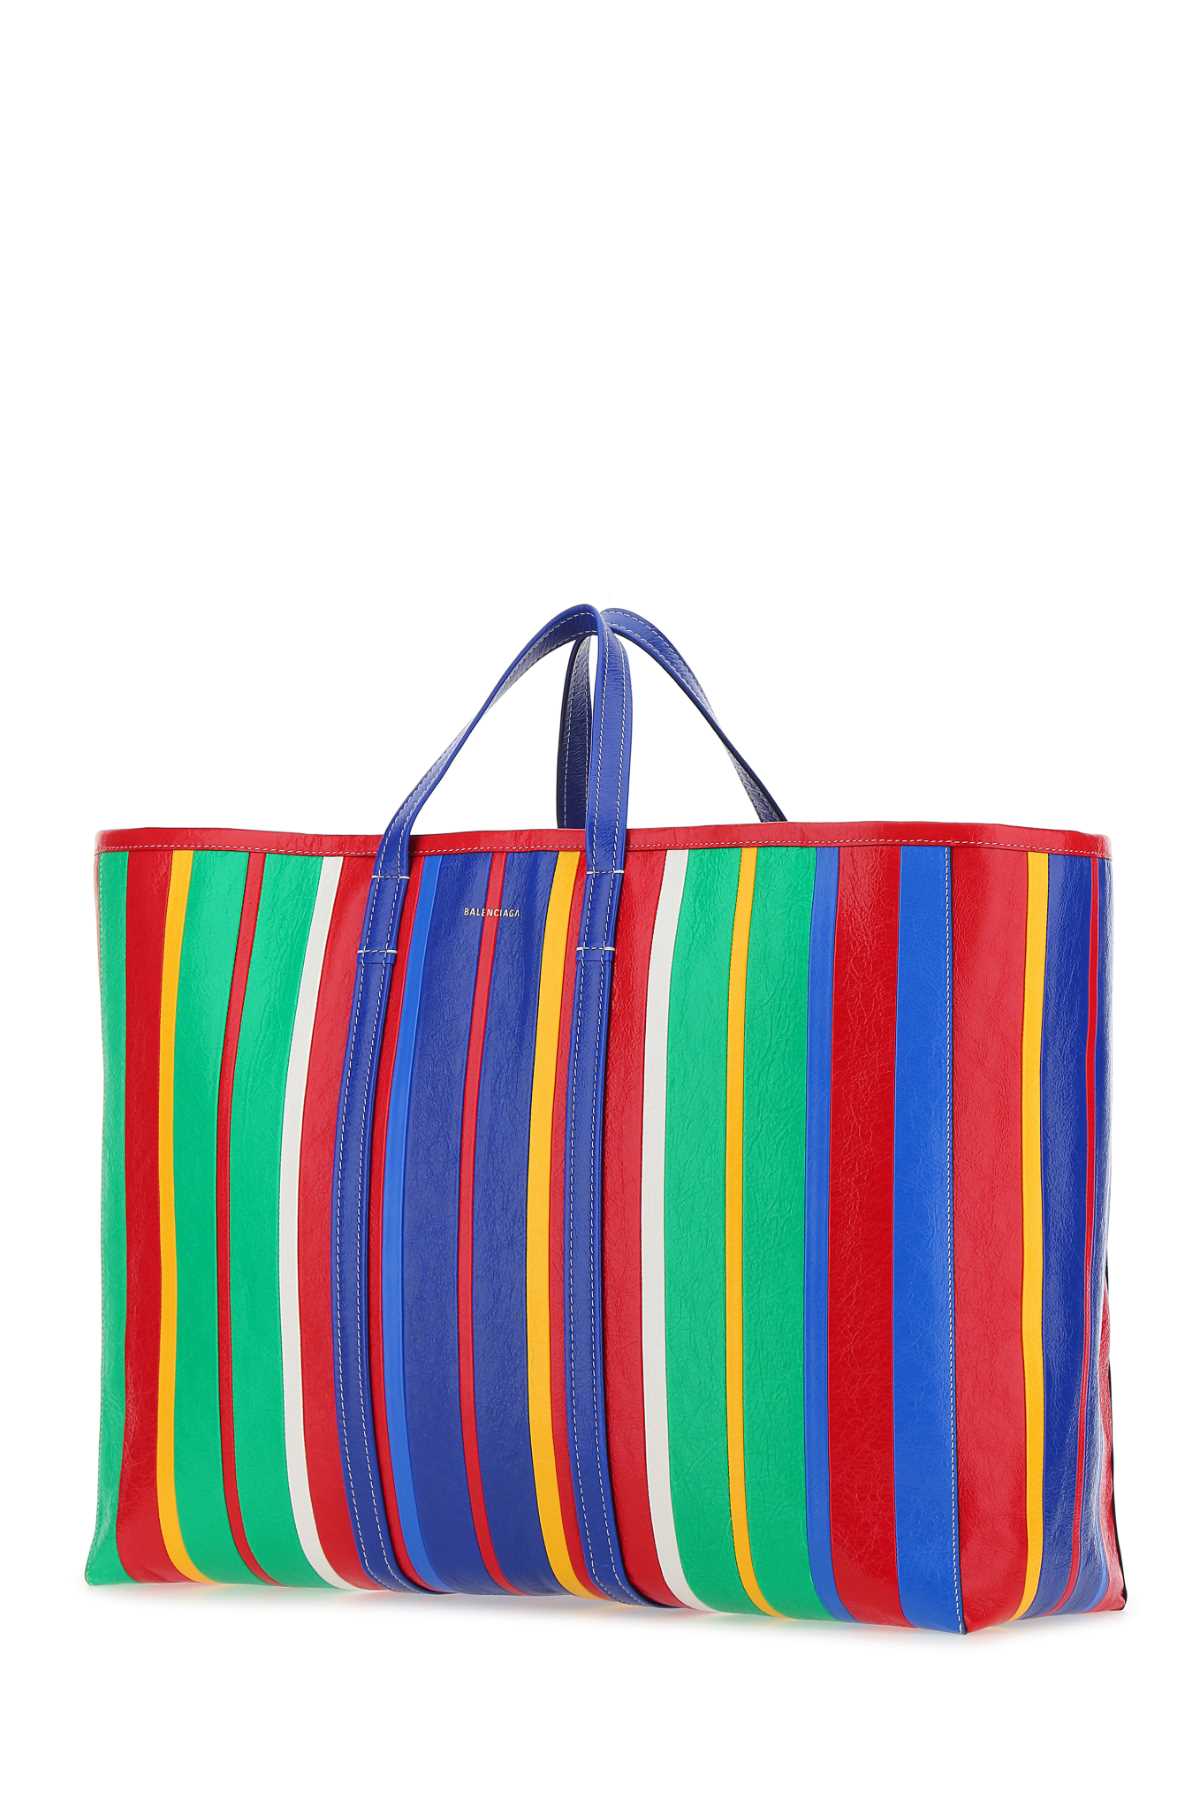 Balenciaga Multicolor Leather Large Barber Shopping Bag Multicoloured  Uomo Tu In 4361